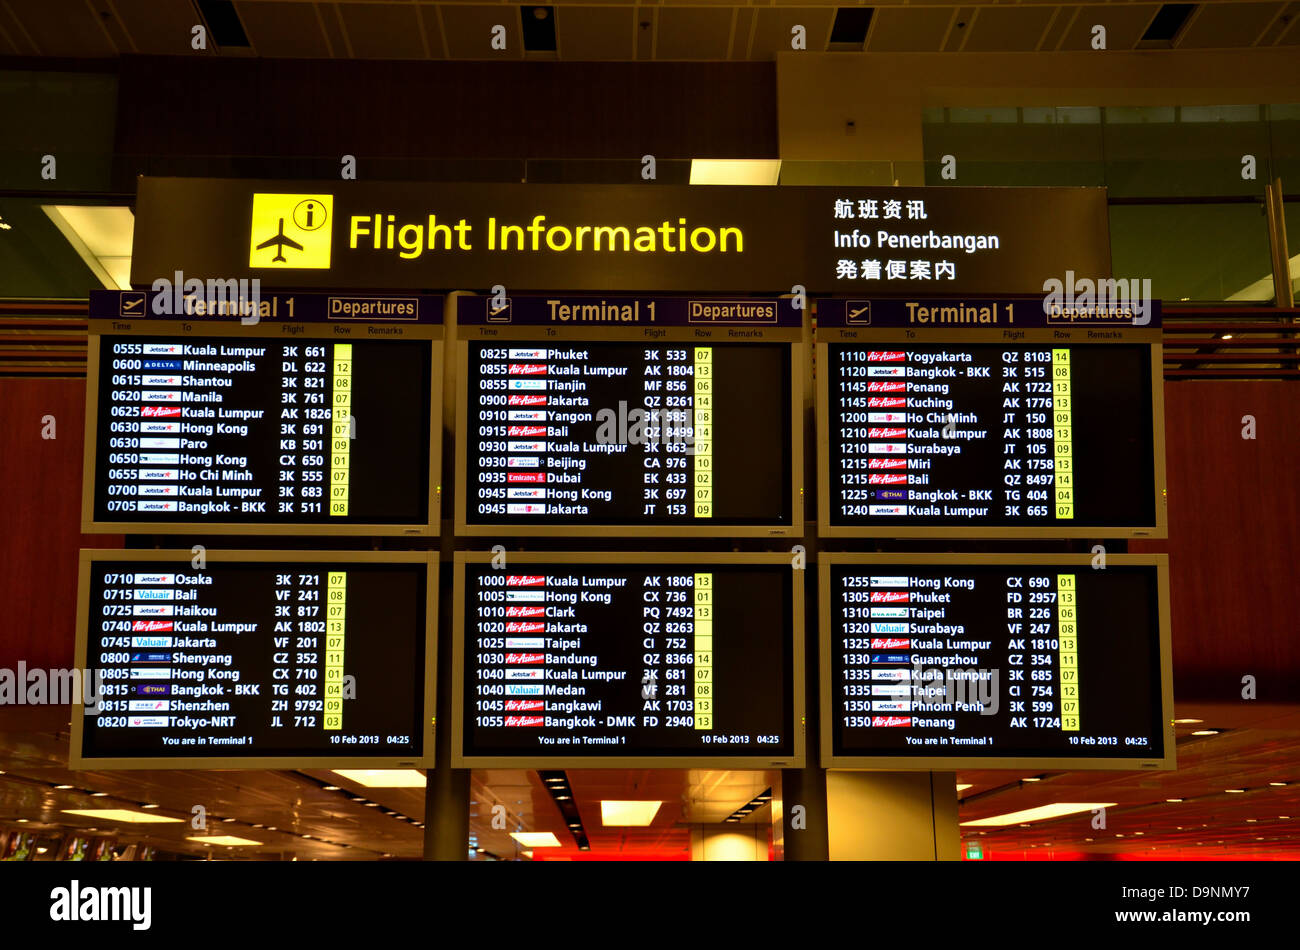 Flight information Region Jakarta.